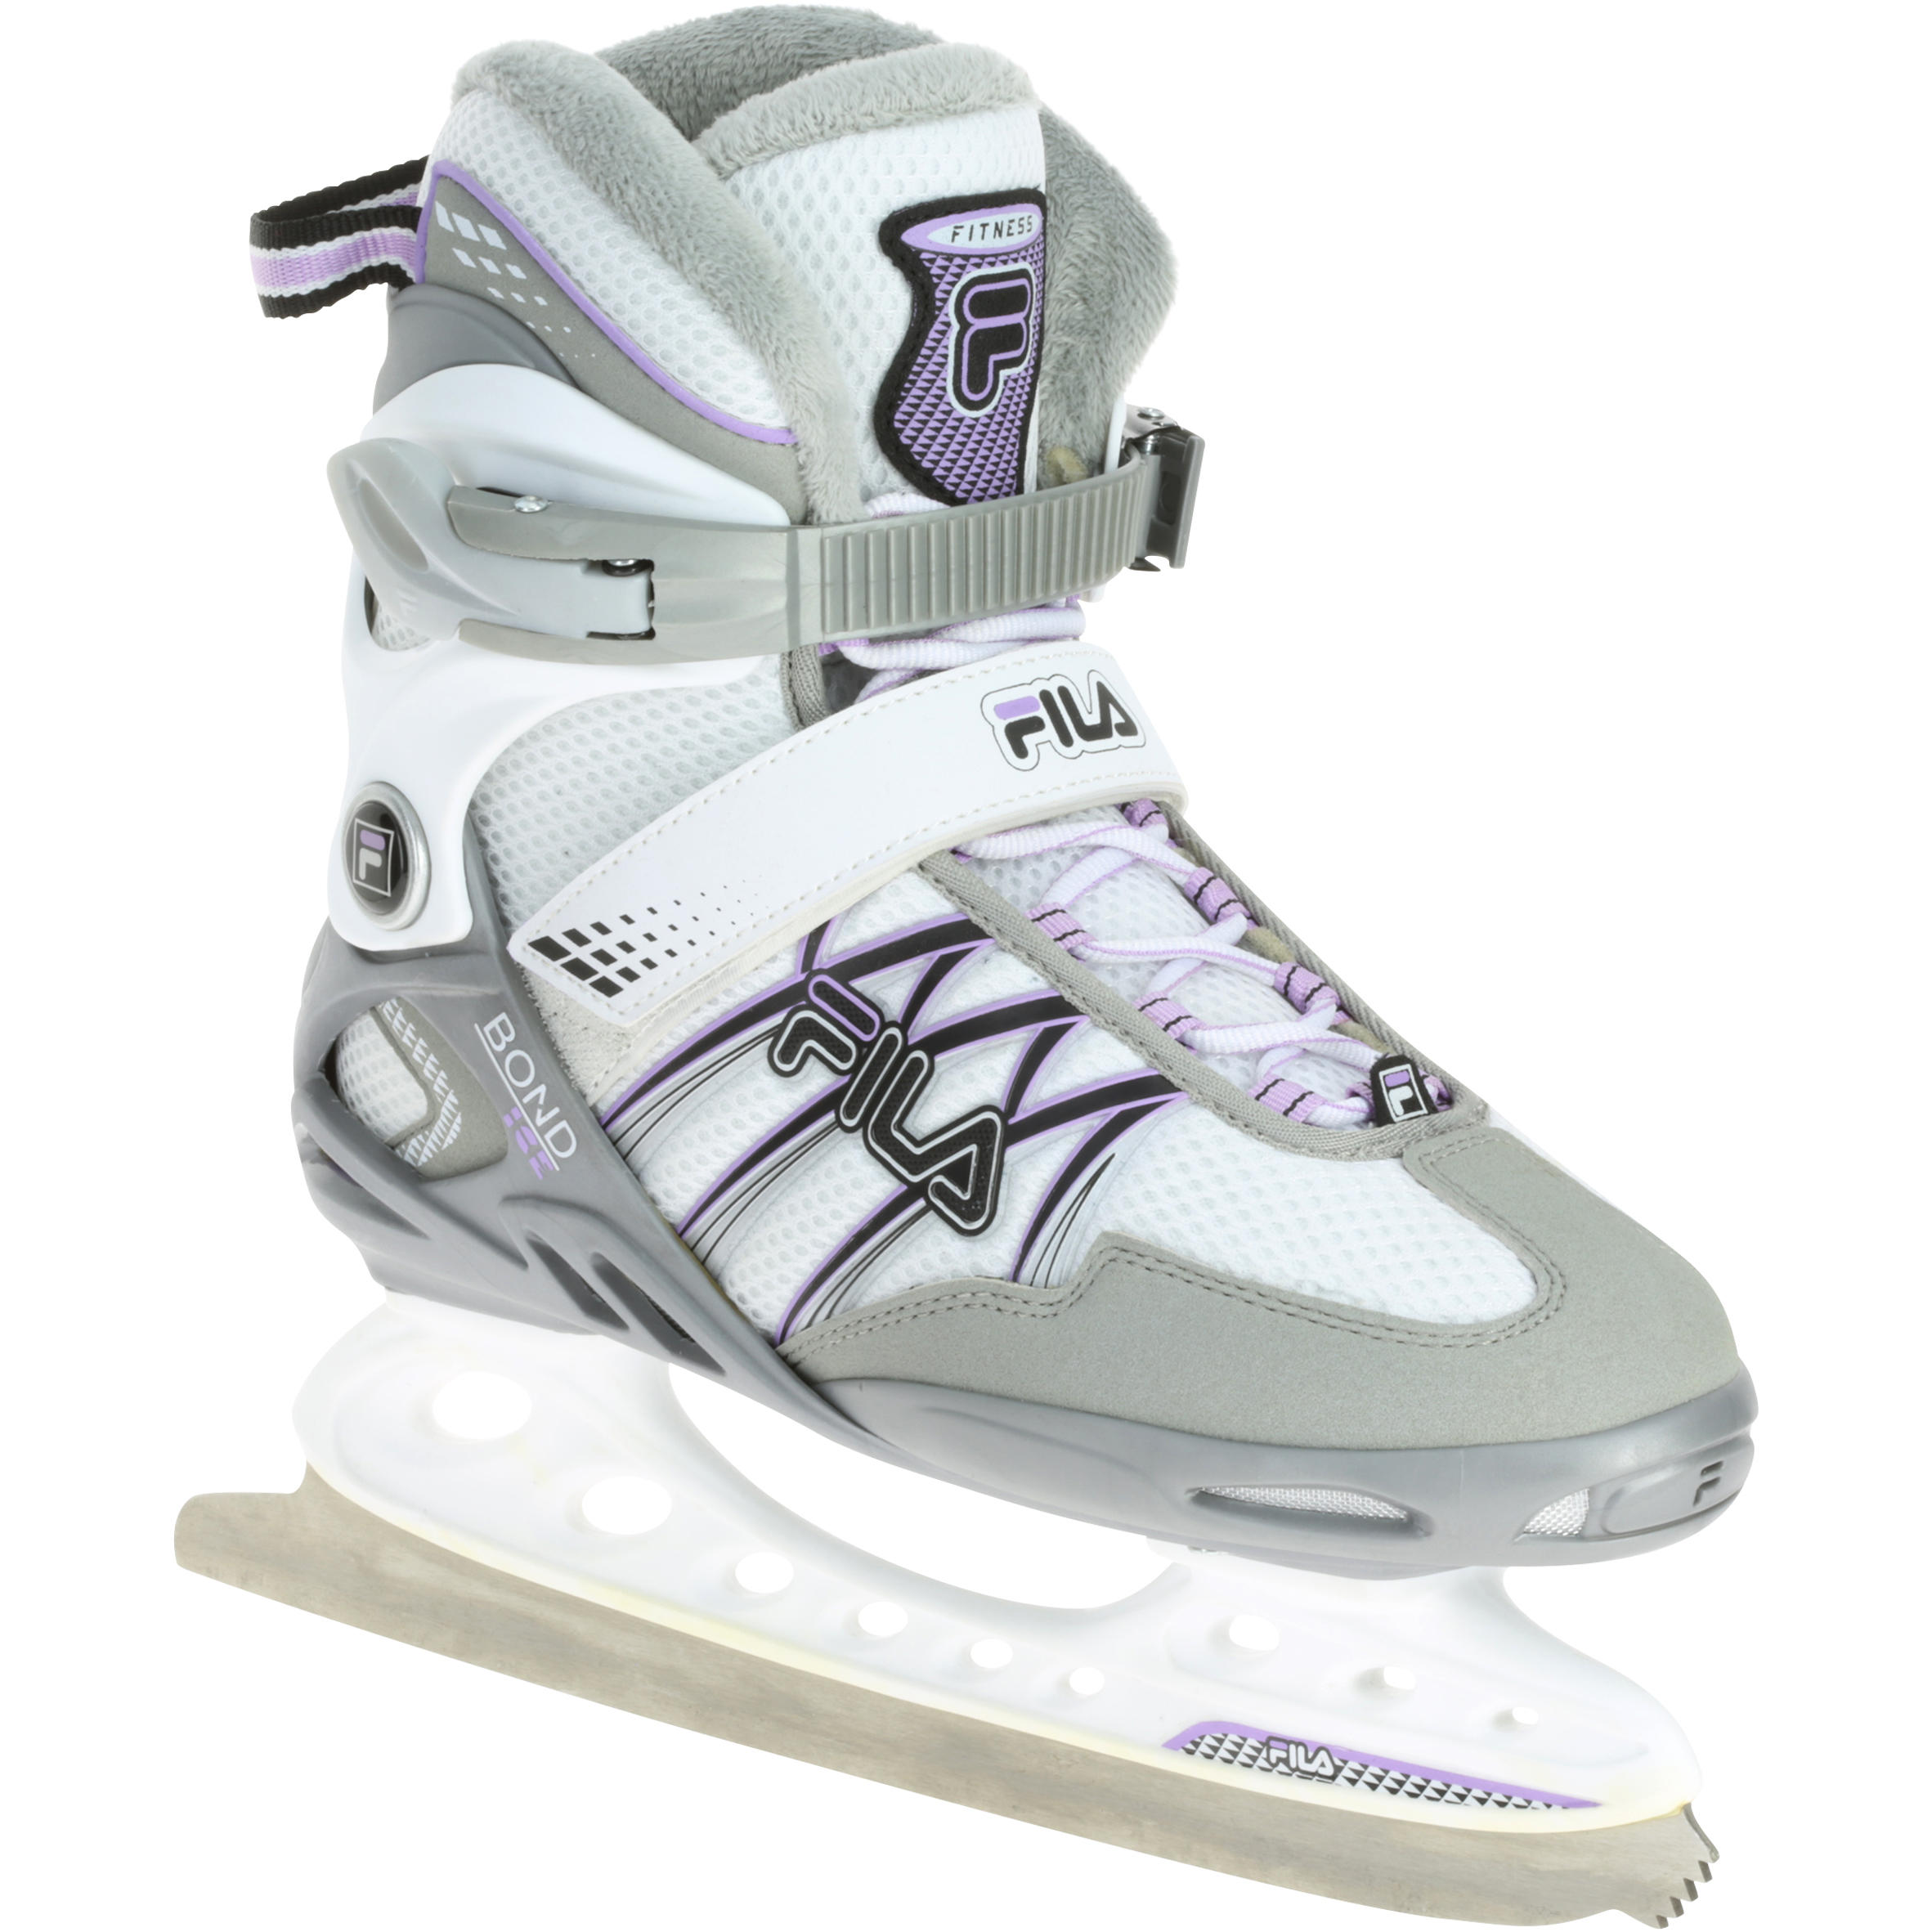 Bond Women's Ice Skates - White/Lilac 1/11